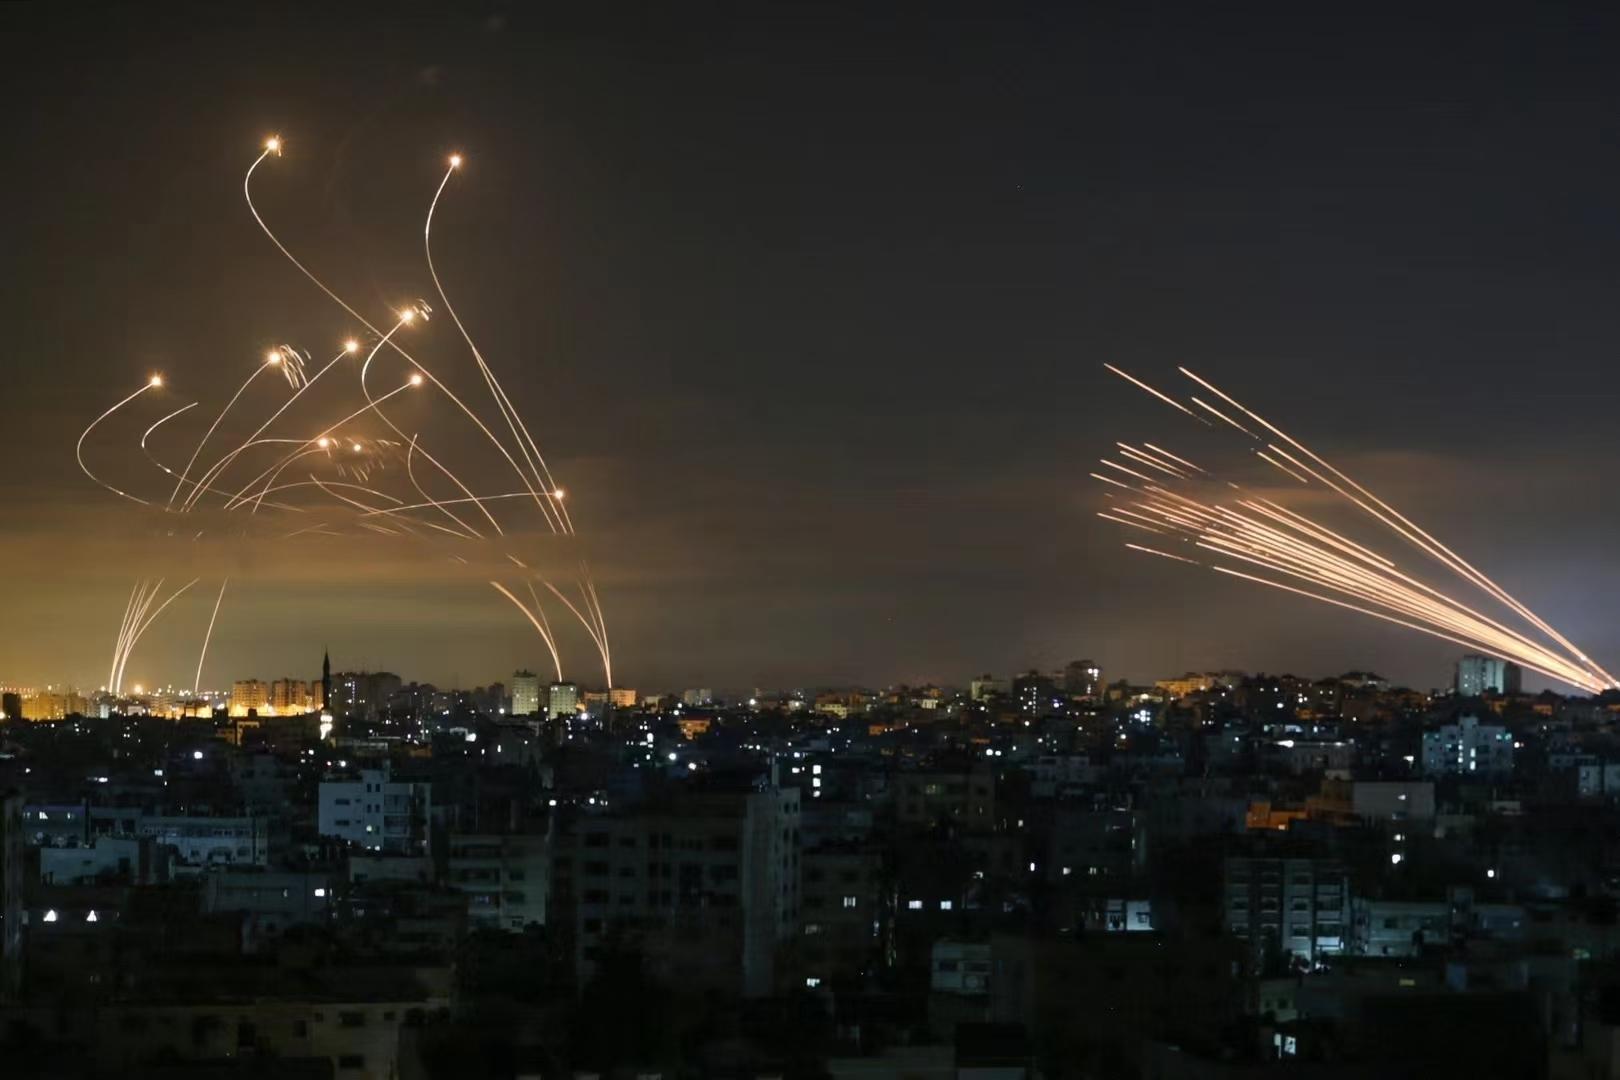 哈马斯称与以色列达成停火协议 - 2019年3月26日, 俄罗斯卫星通讯社